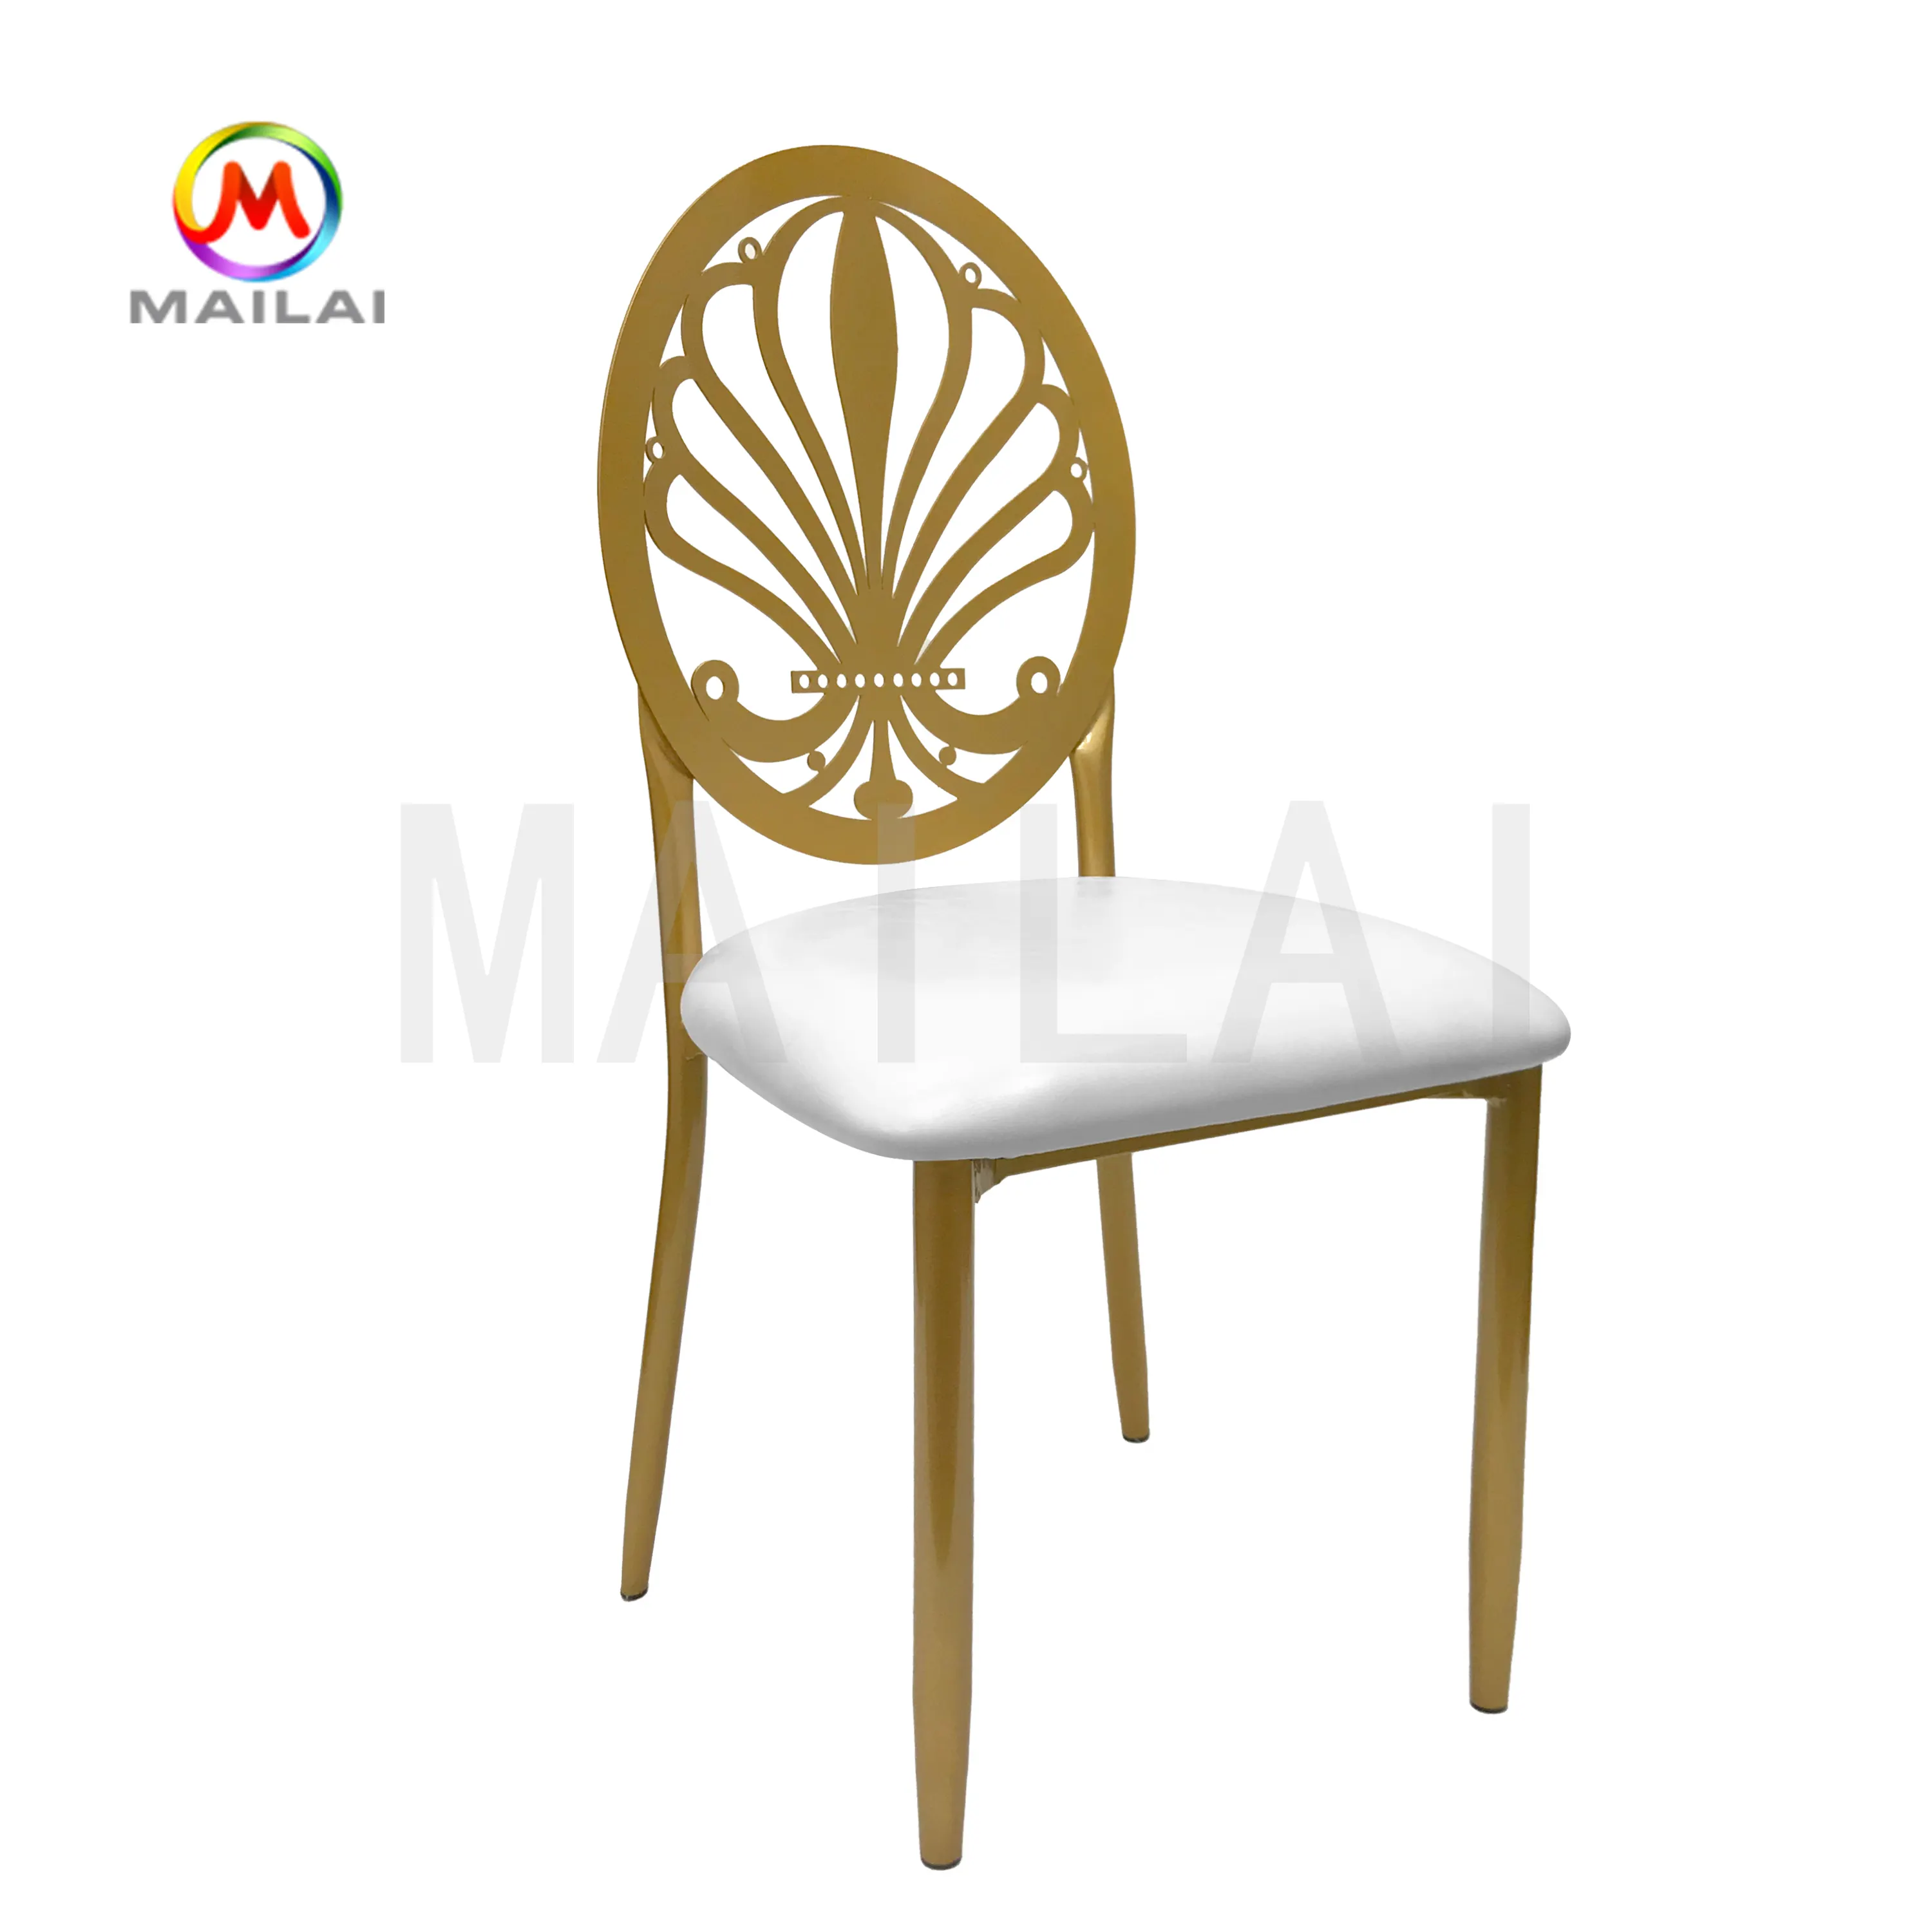 Risanshan — chaise de mariage royal en cuir, coussin en métal, or, nouveau design